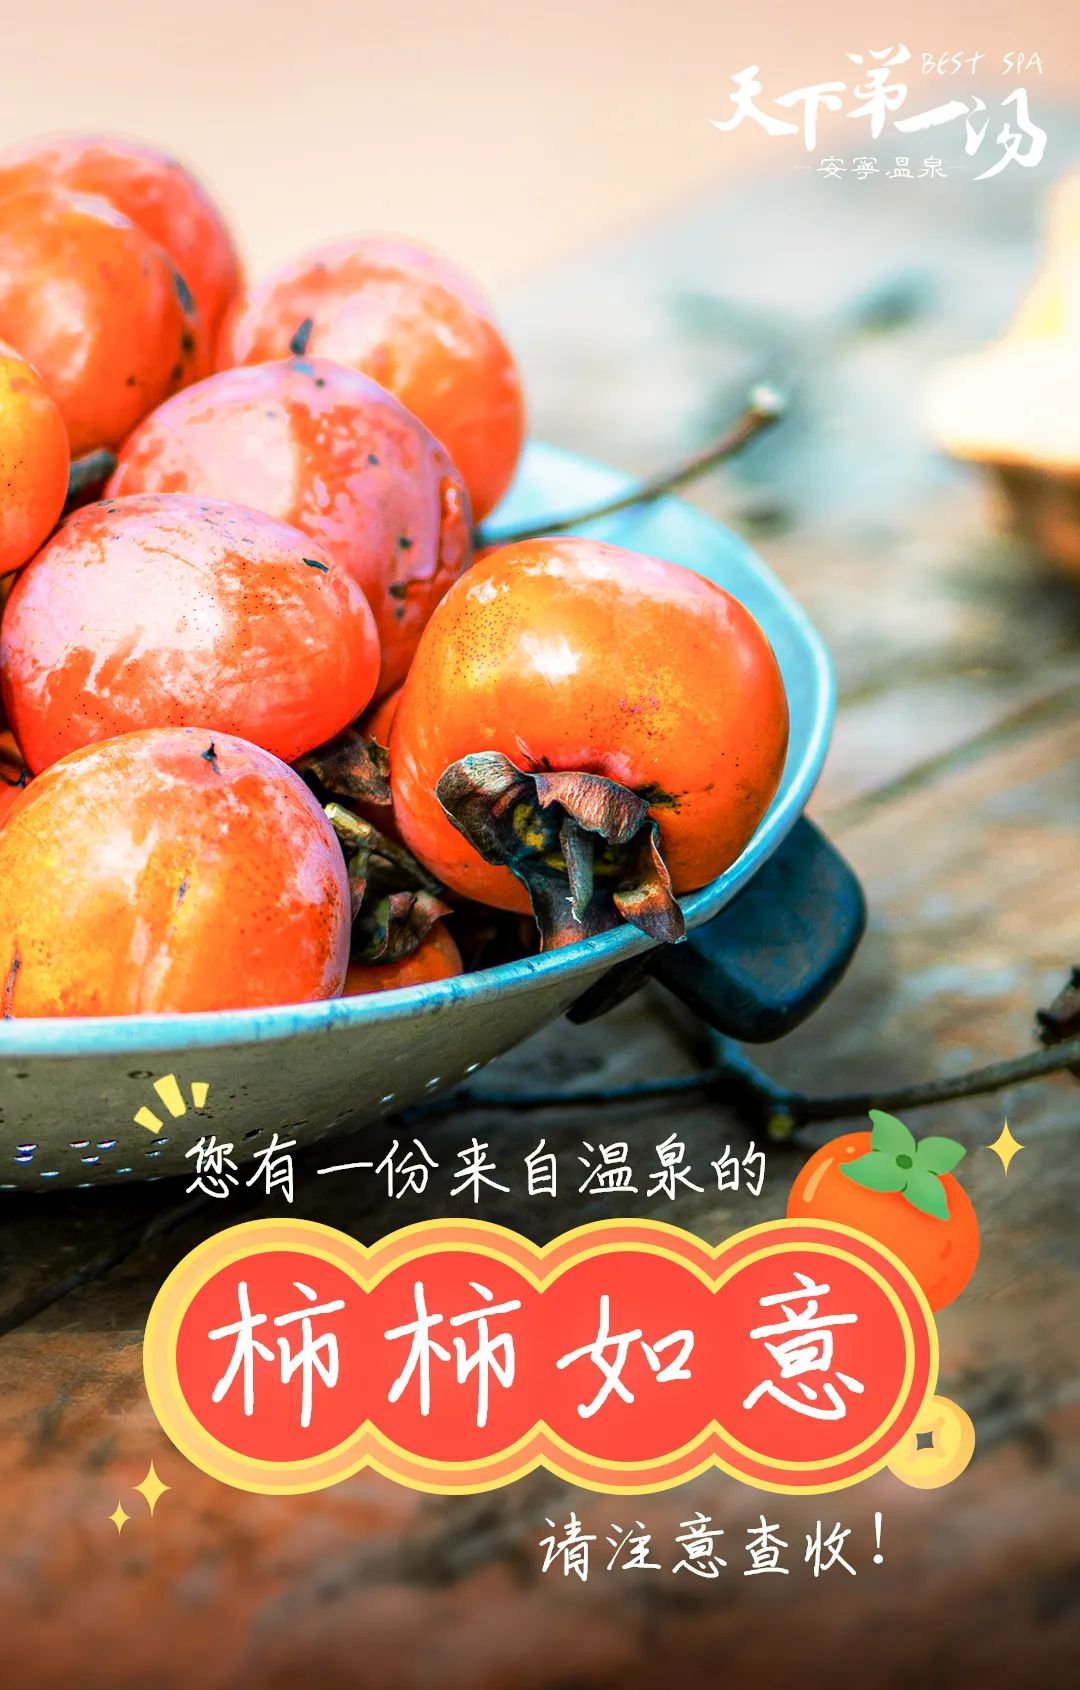 徽州|您有一份来自温泉的“柿柿如意”，请注意查收